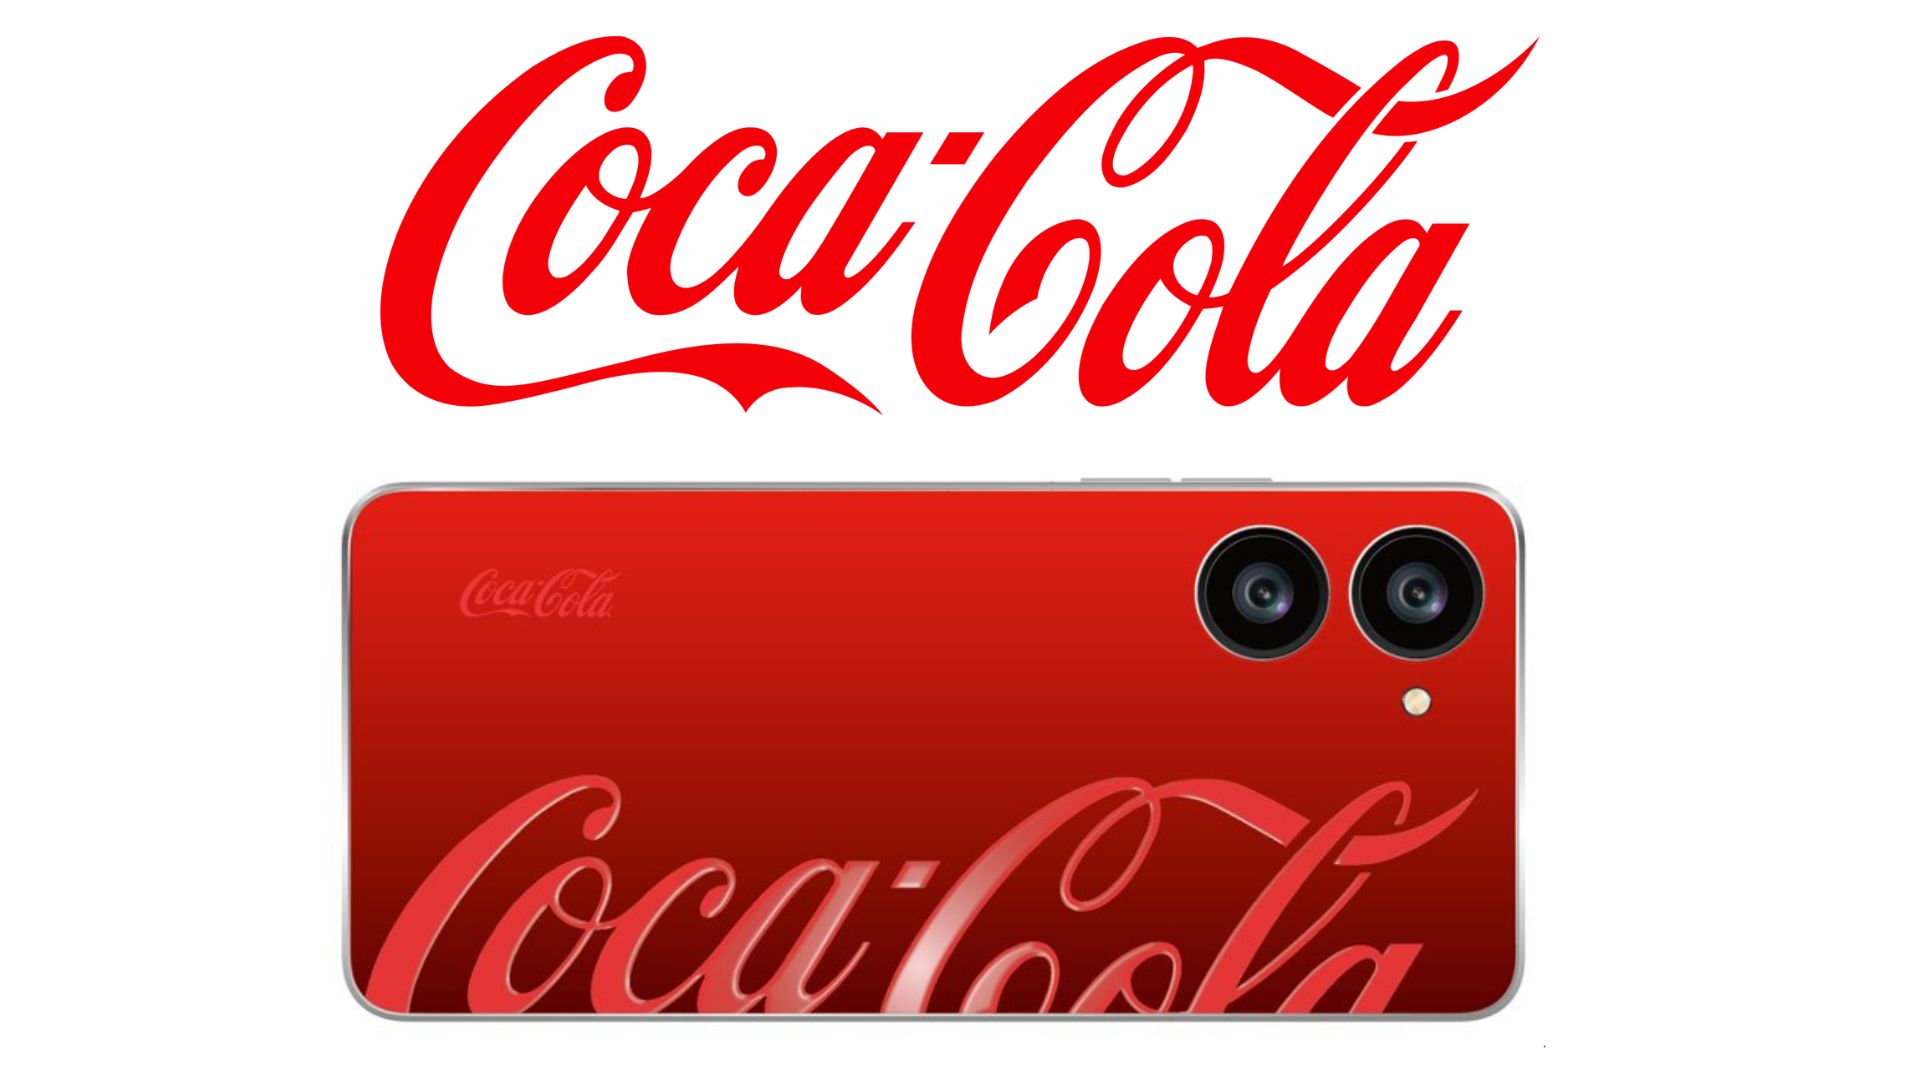 หลุดภาพเรนเดอร์มือถือ Coca-Cola เครื่องแดงสะใจ!